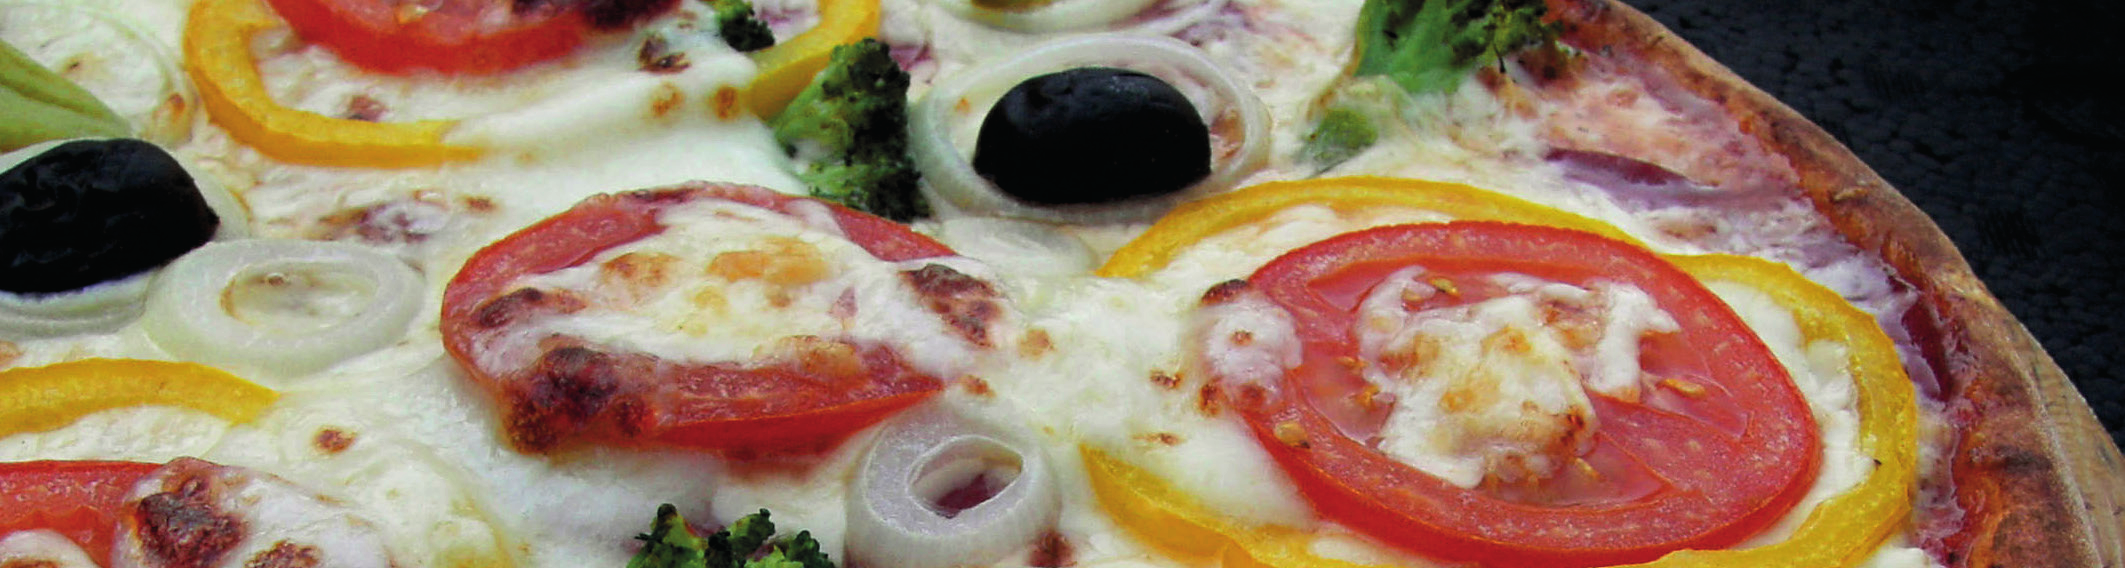 Pizze (Pizza) Groß 110. Pizza Calzone Hawaii 7,90 mit Schinken & Ananas zusammengeklappt 111. Pizza Calzone Tonno e Cipolla 7,90 mit Thunfisch & Zwiebeln zusammengeklappt 112.